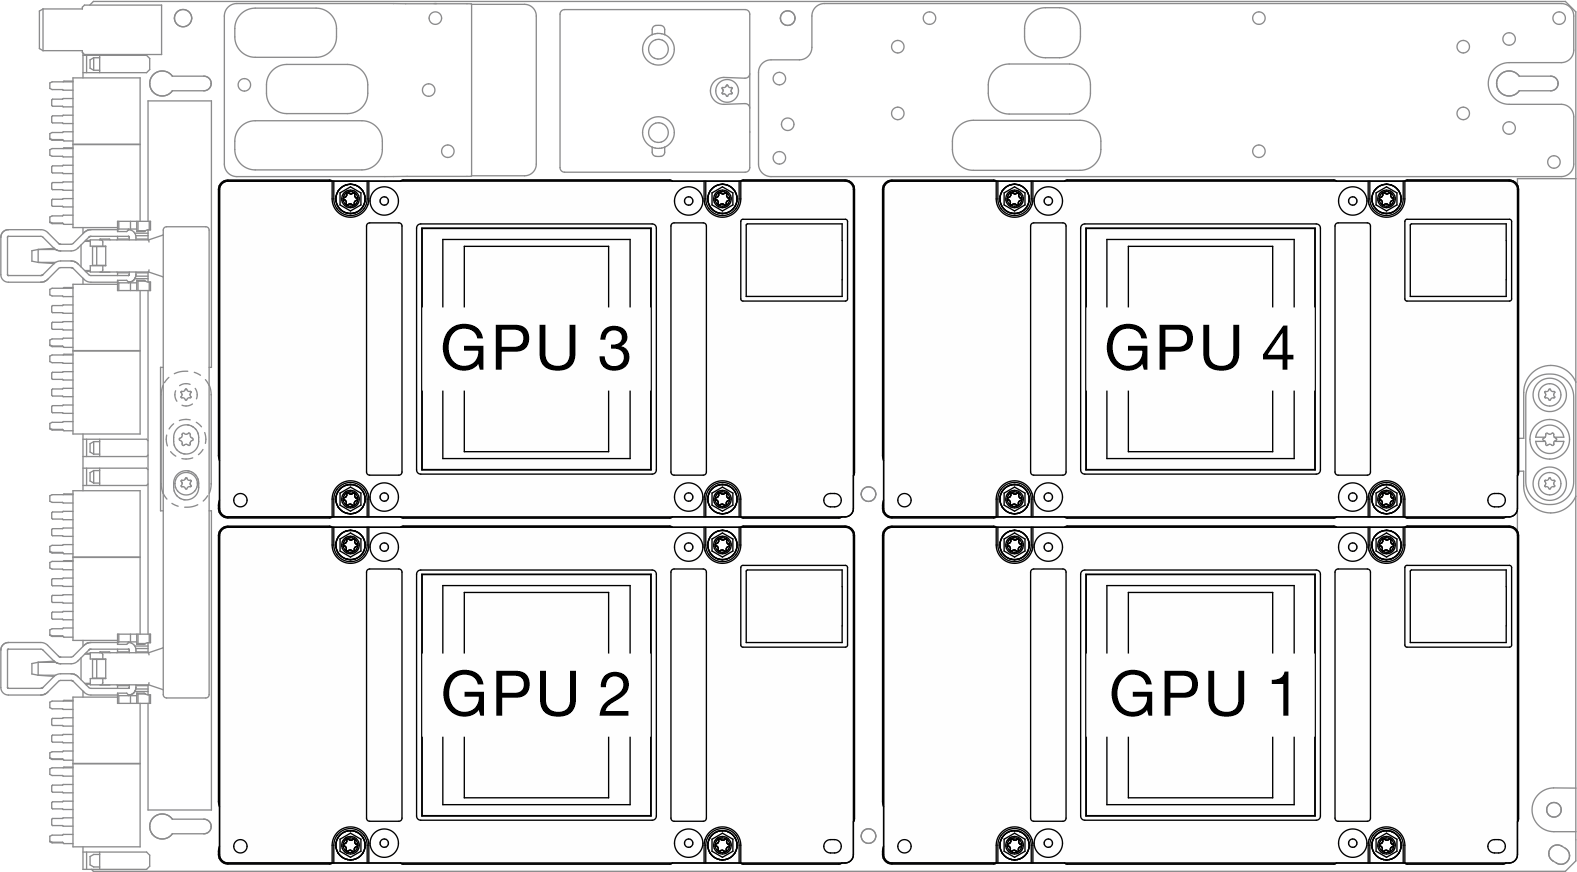 SXM5 GPU numbering